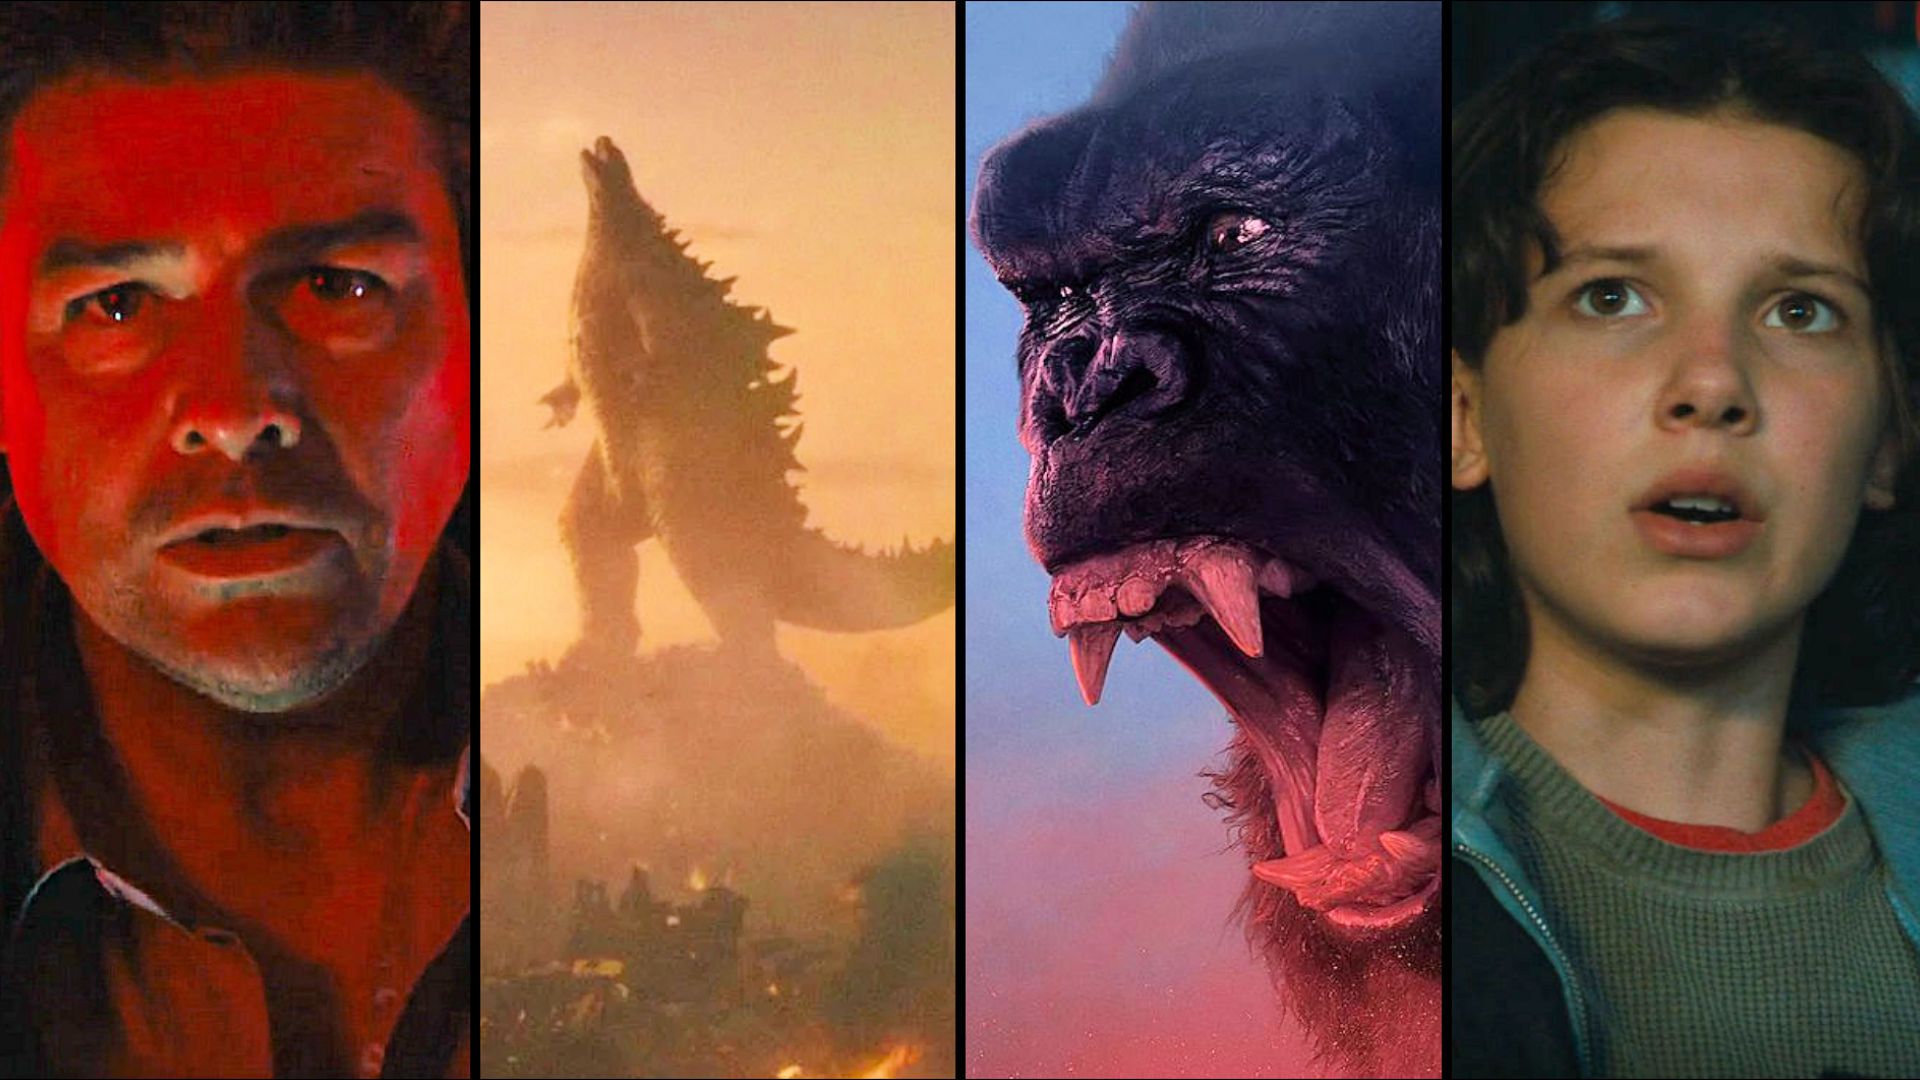 Kong: Skull Island may move to Warner Bros., setting up Godzilla